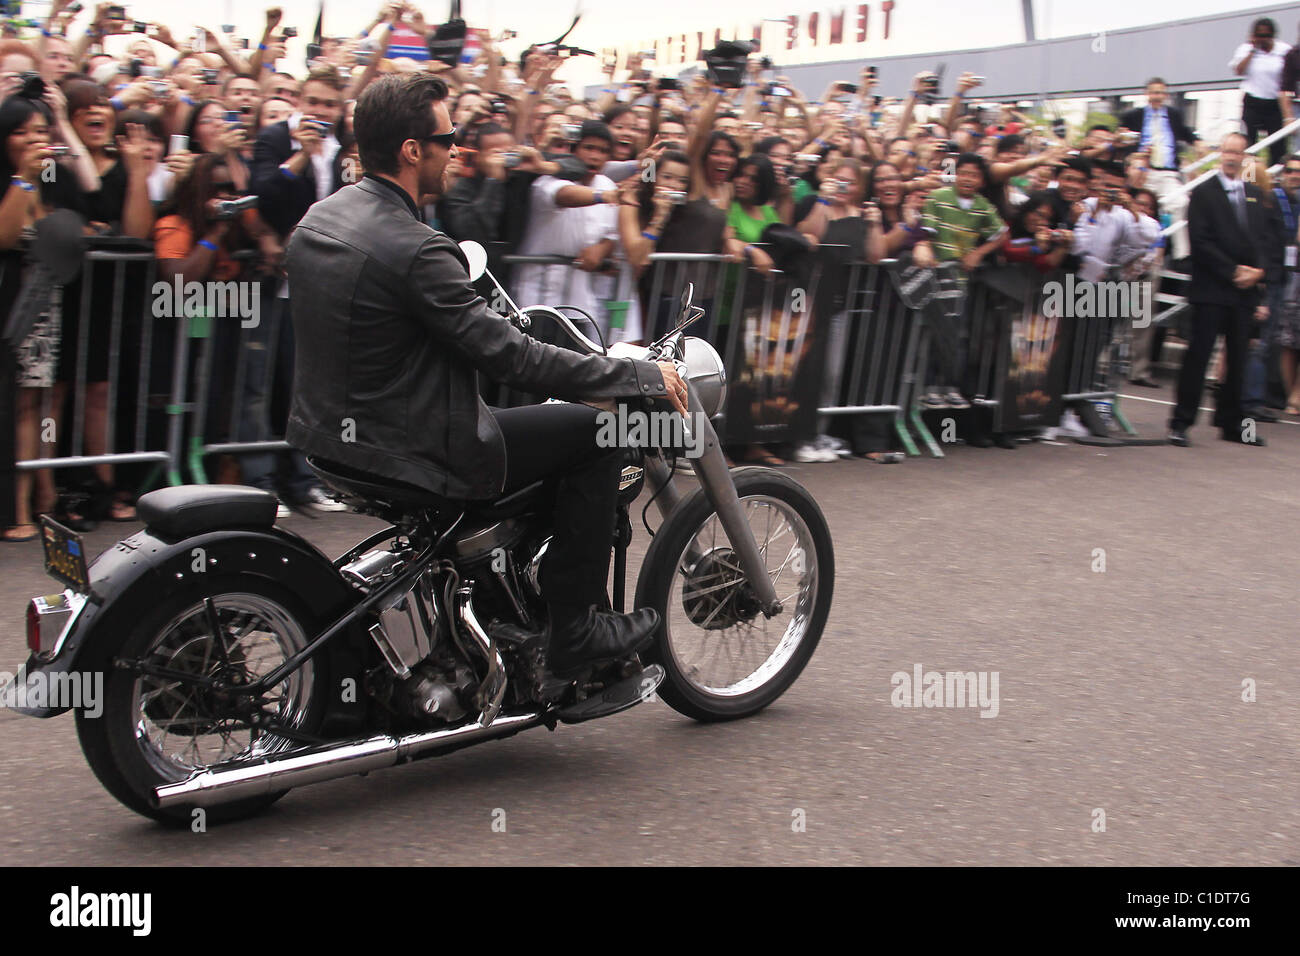 Hugh Jackman kommt mit dem Motorrad bei der Weltpremiere von "X-Men  Origins: Wolverine" Harkin Theater Tempe, Arizona Stockfotografie - Alamy